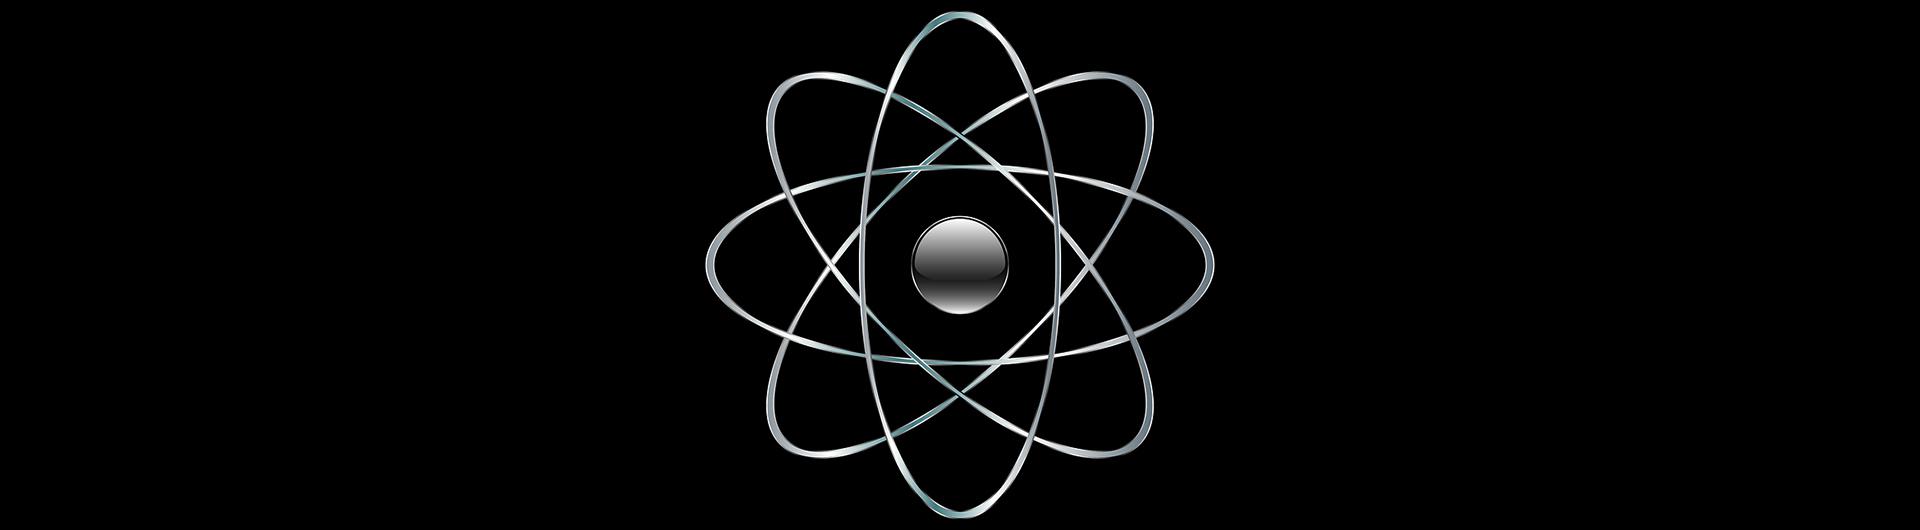 Atom Banner